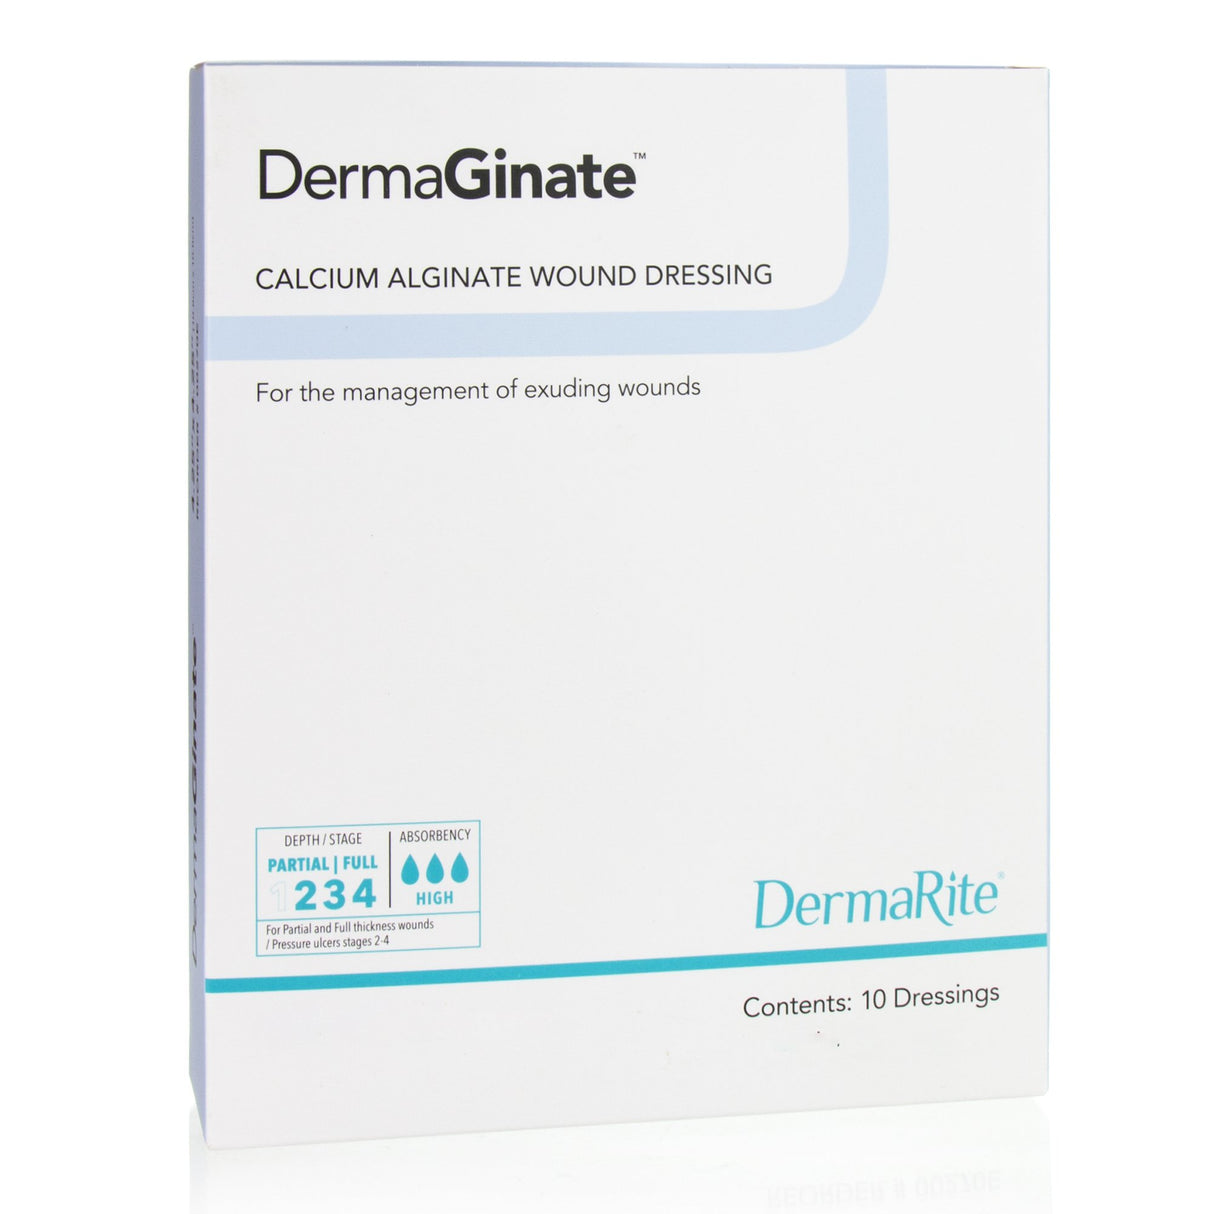 DermaGinate® 2 x 2 Calcium Alginate Dressing